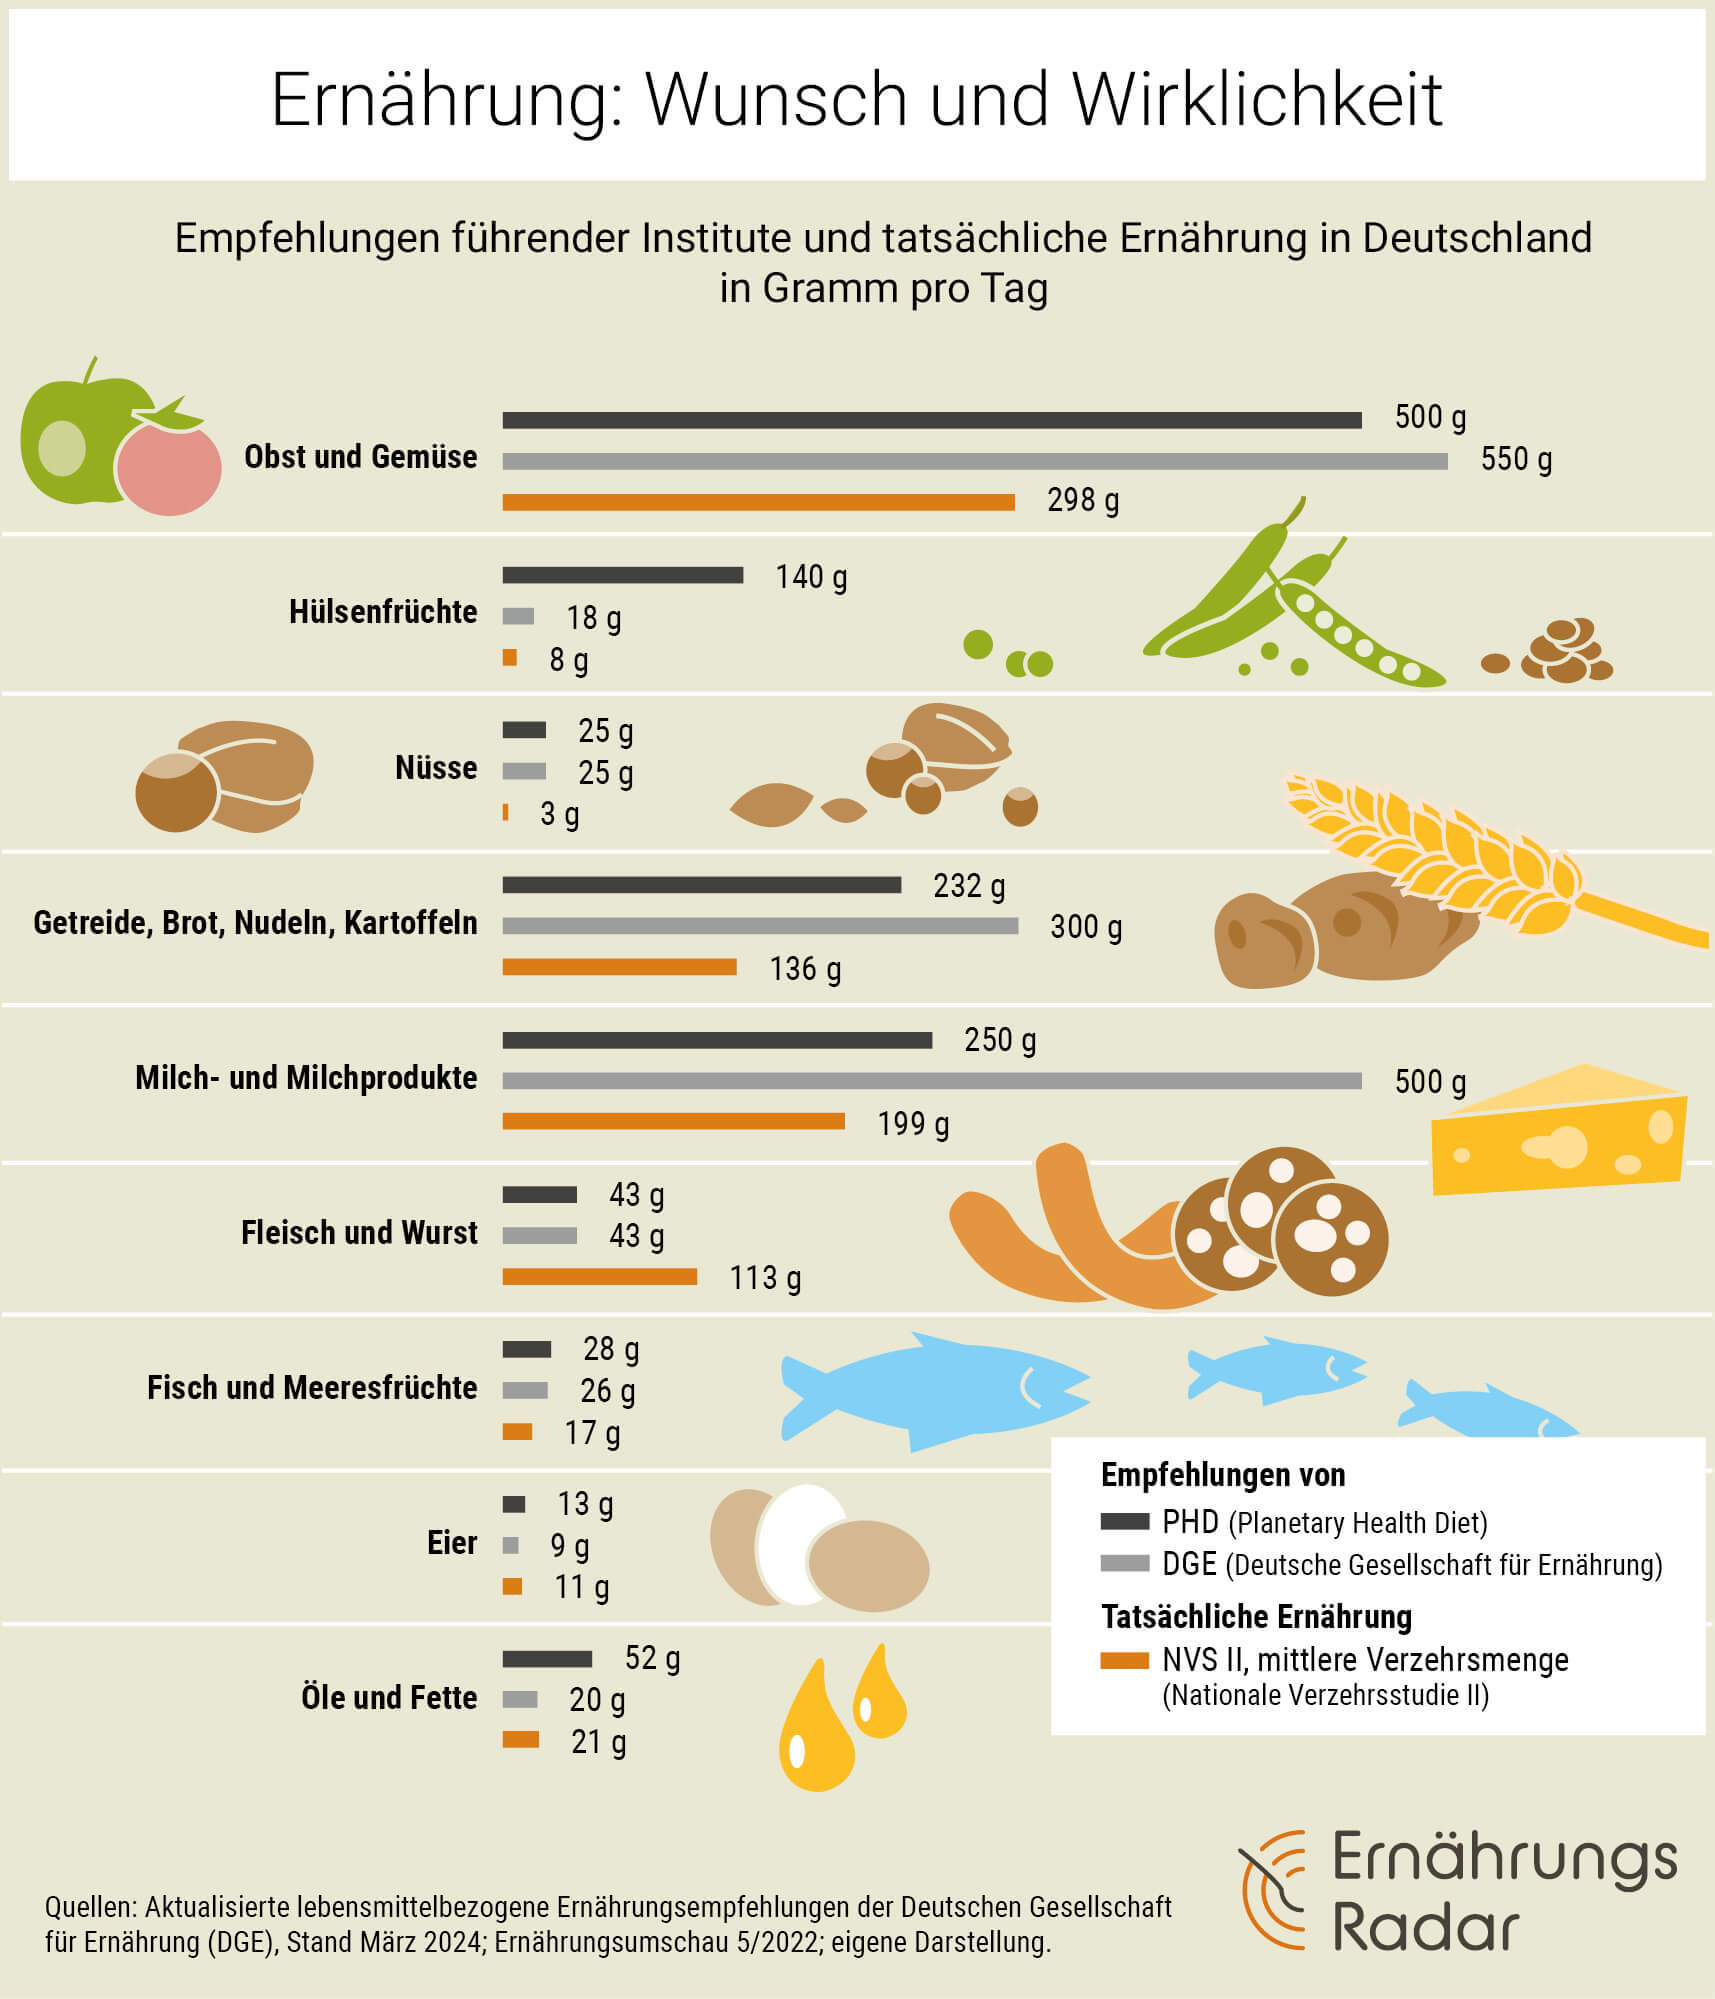 Die Grafik vergleicht die Empfehlungen der Planetary Health Diet mit denen der Deutschen Gesellschaft für Ernährung von 2024 und den tatsächlichen Verzehrsmengen in Deutschland.